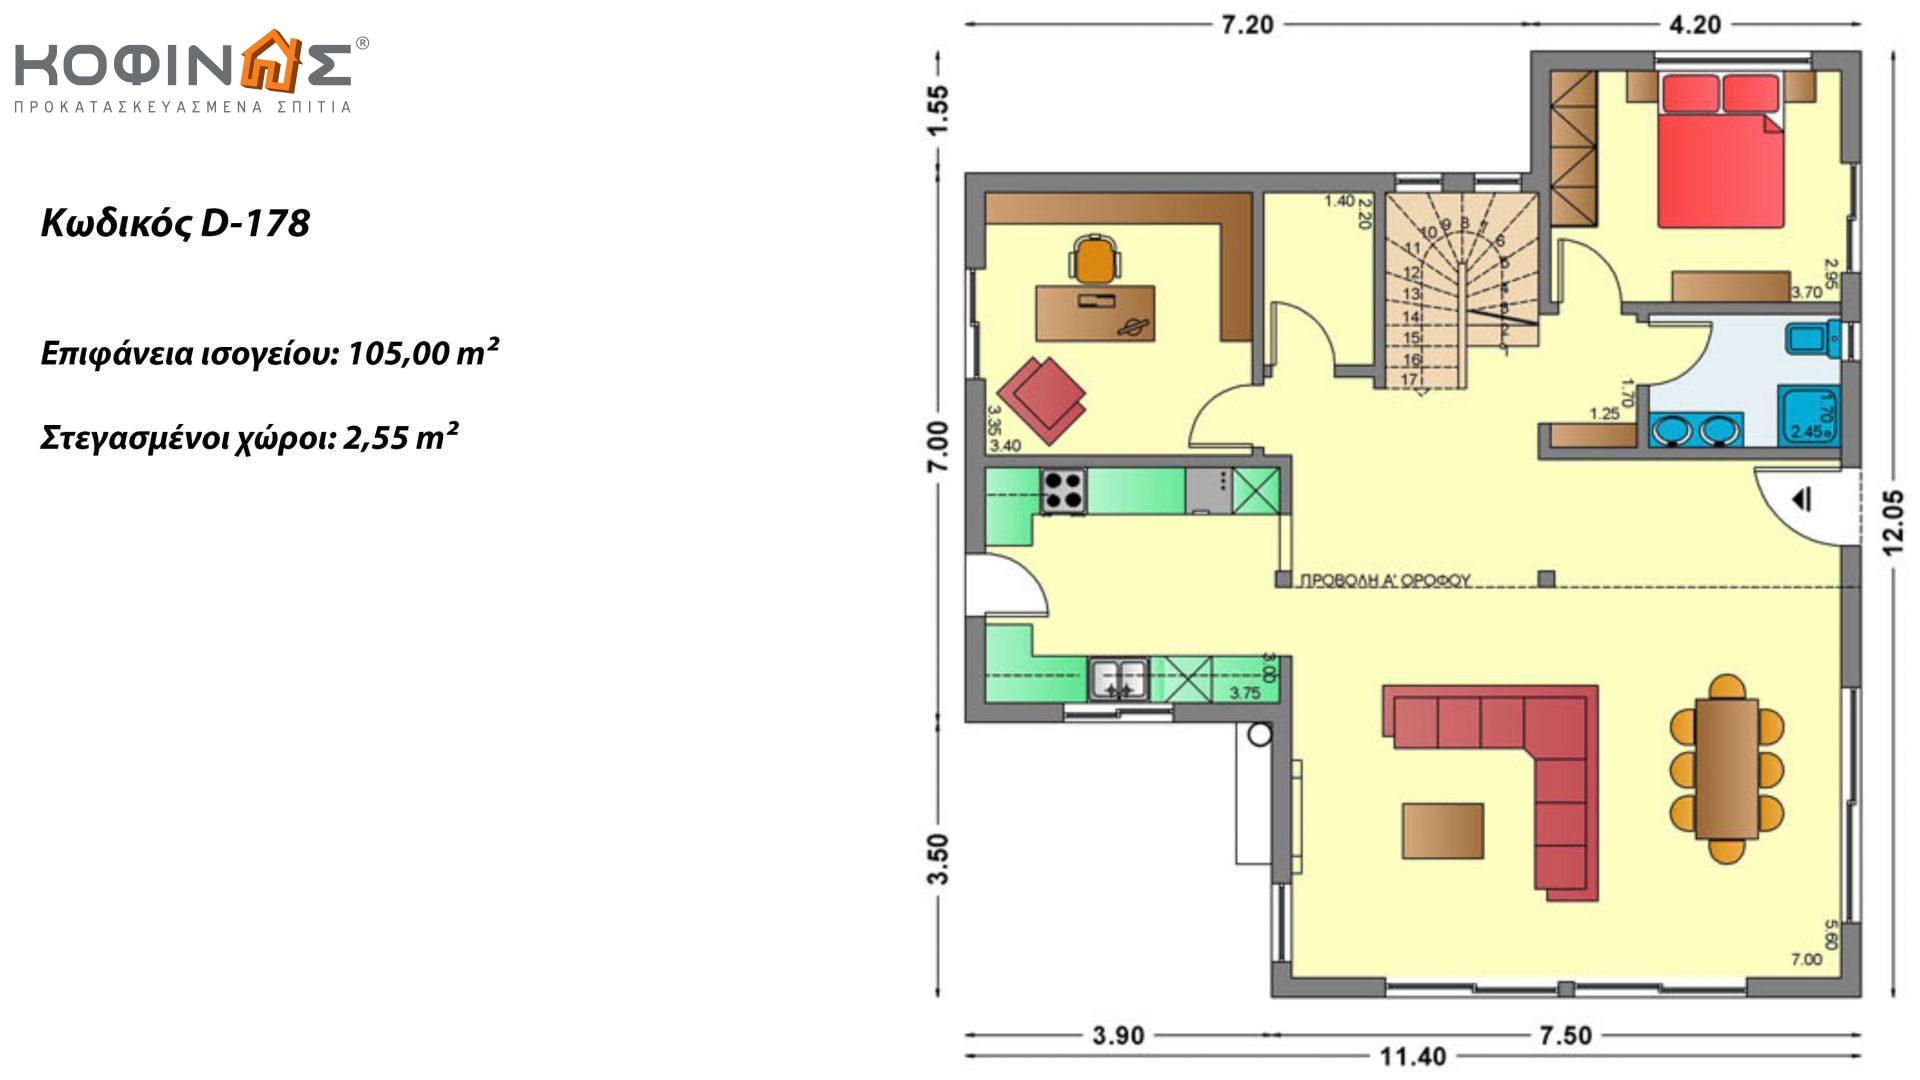 Διώροφη Κατοικία D-178, συνολικής επιφάνειας 178,80 τ.μ., συνολική επιφάνεια στεγασμένων χώρων 40.46 τ.μ., μπαλκόνι 37.91 τ.μ.